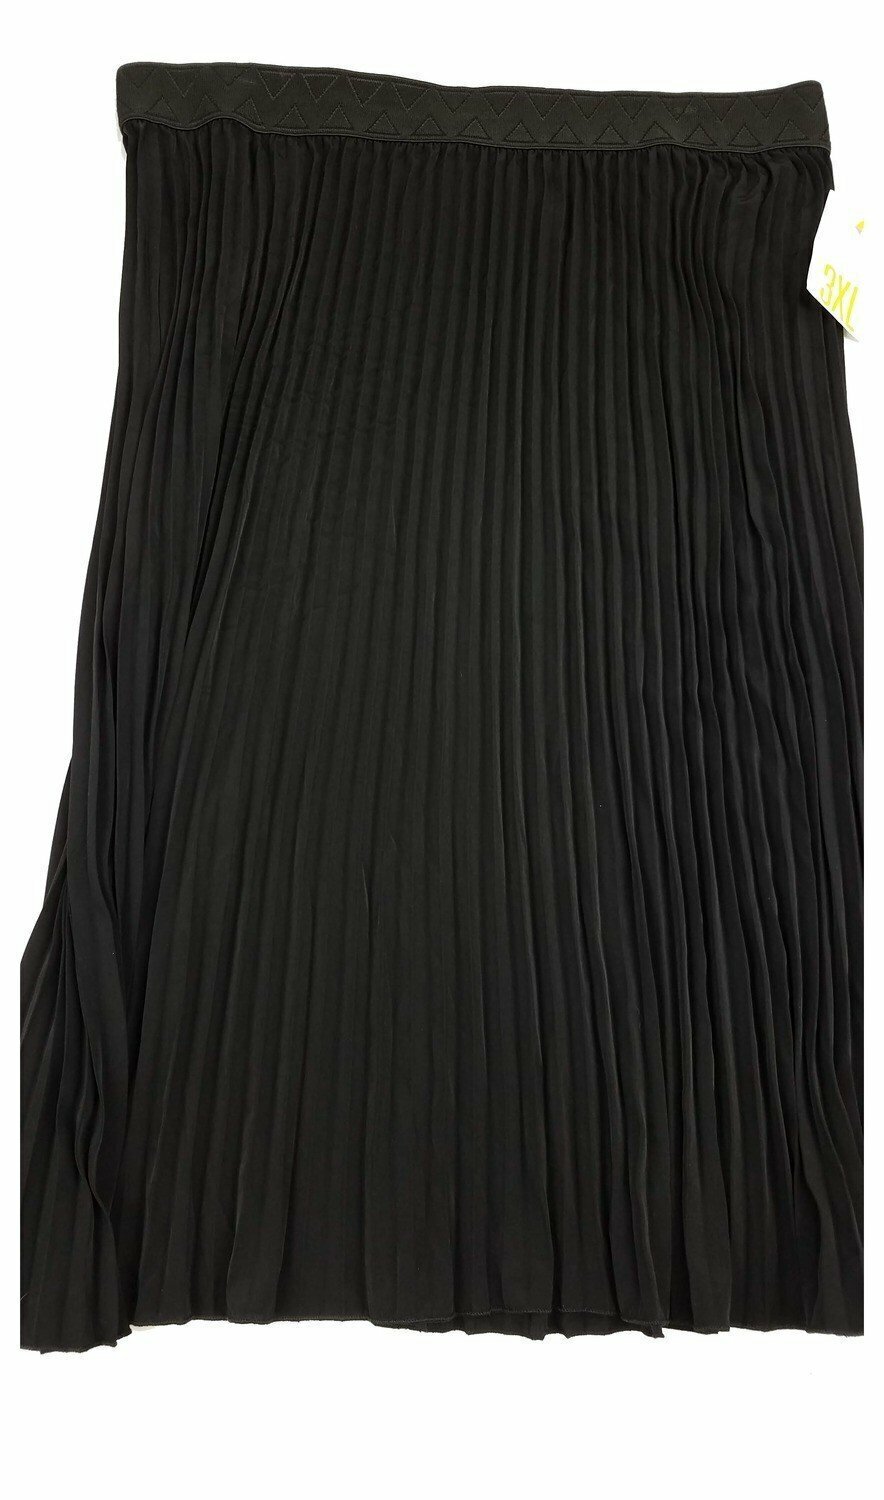 LuLaRoe Jill Black XXX-Large 3XL Accordion Women's Skirt fits sizes Sizes 26-28